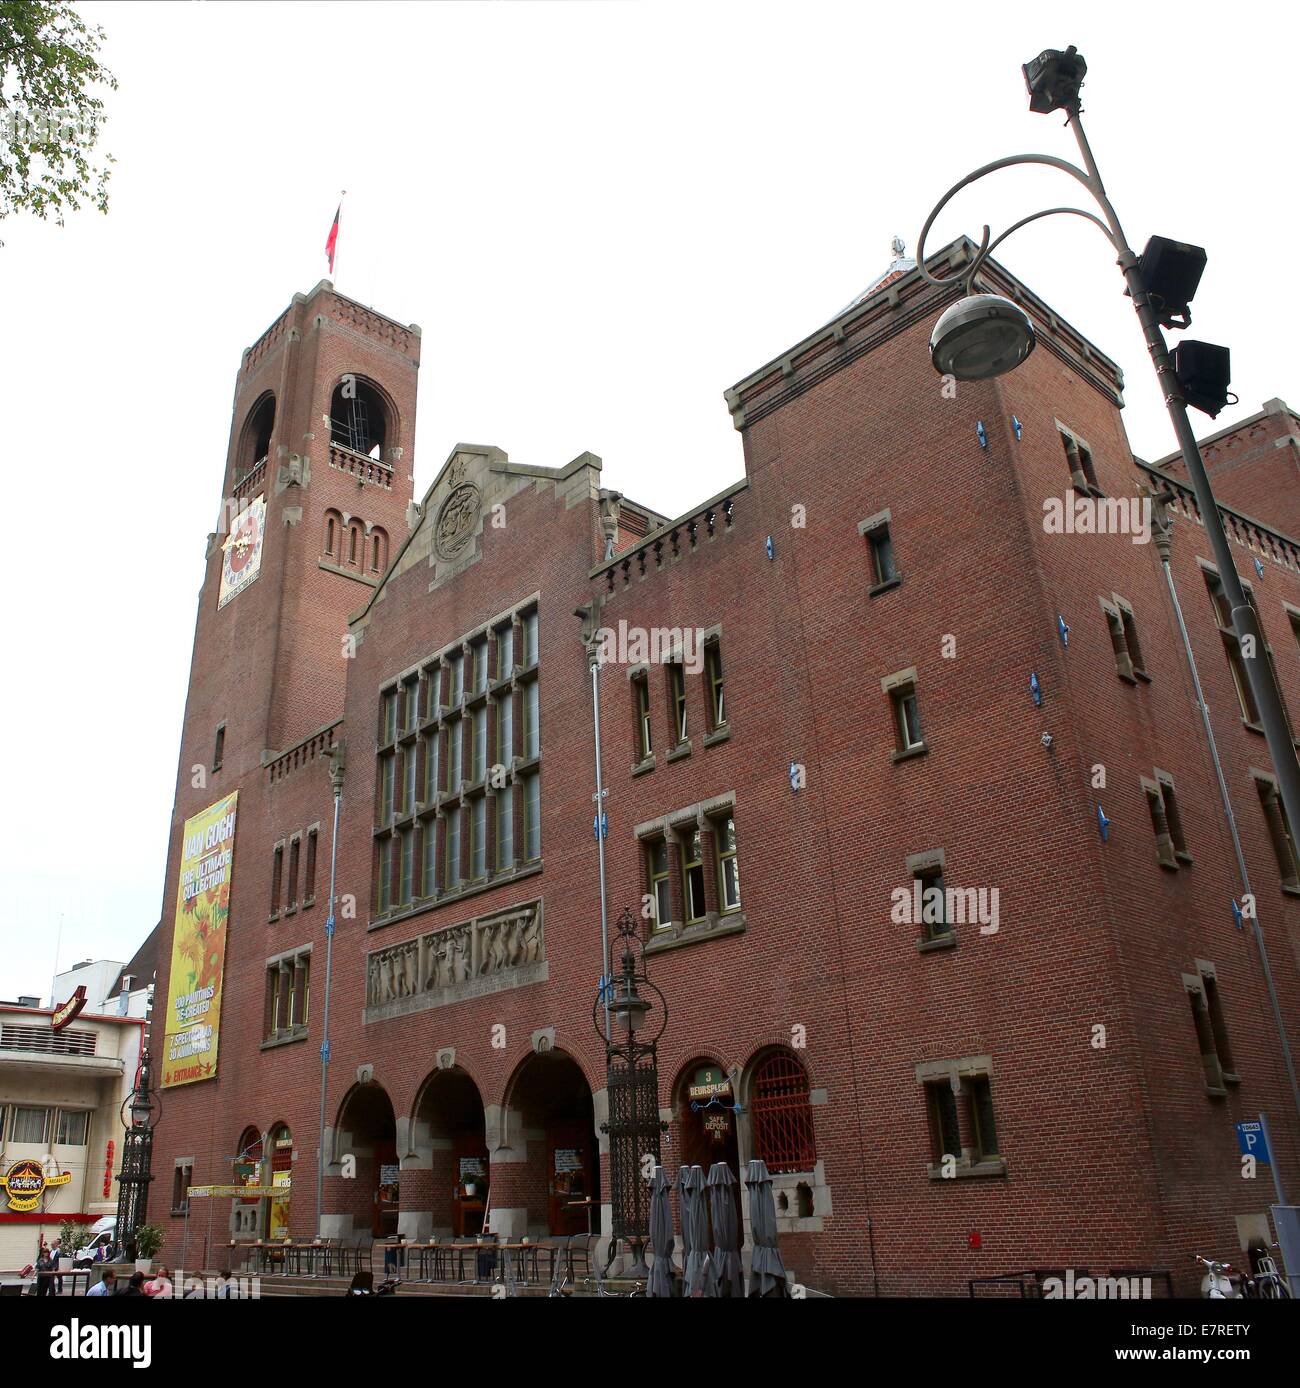 Beurs van Berlage (1896-1903) bâtiment sur le Damrak, centre d'Amsterdam. Anciennement un échange de marchandises. Vertical (croix) Banque D'Images